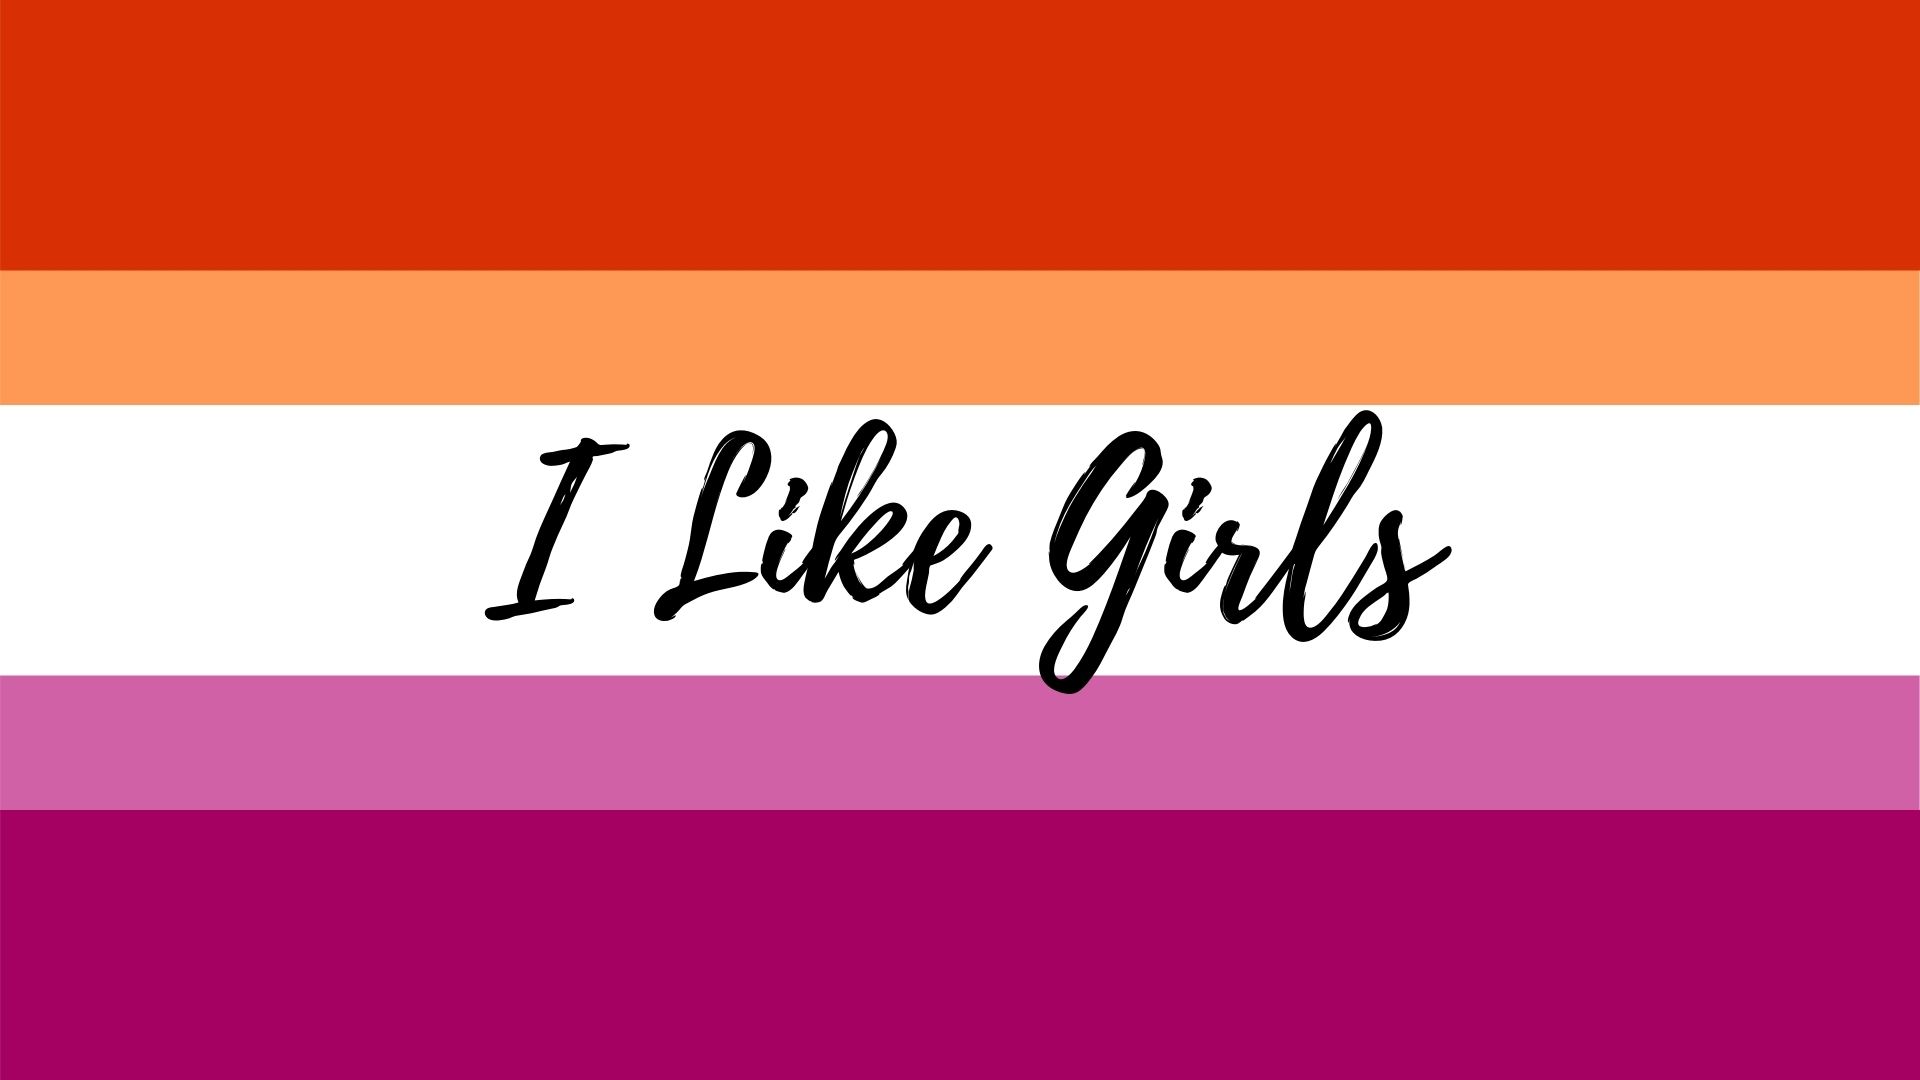 Lesbian Flag Wallpaper - Resolution:1920x1080 - ID:1228257 - wallha.com.